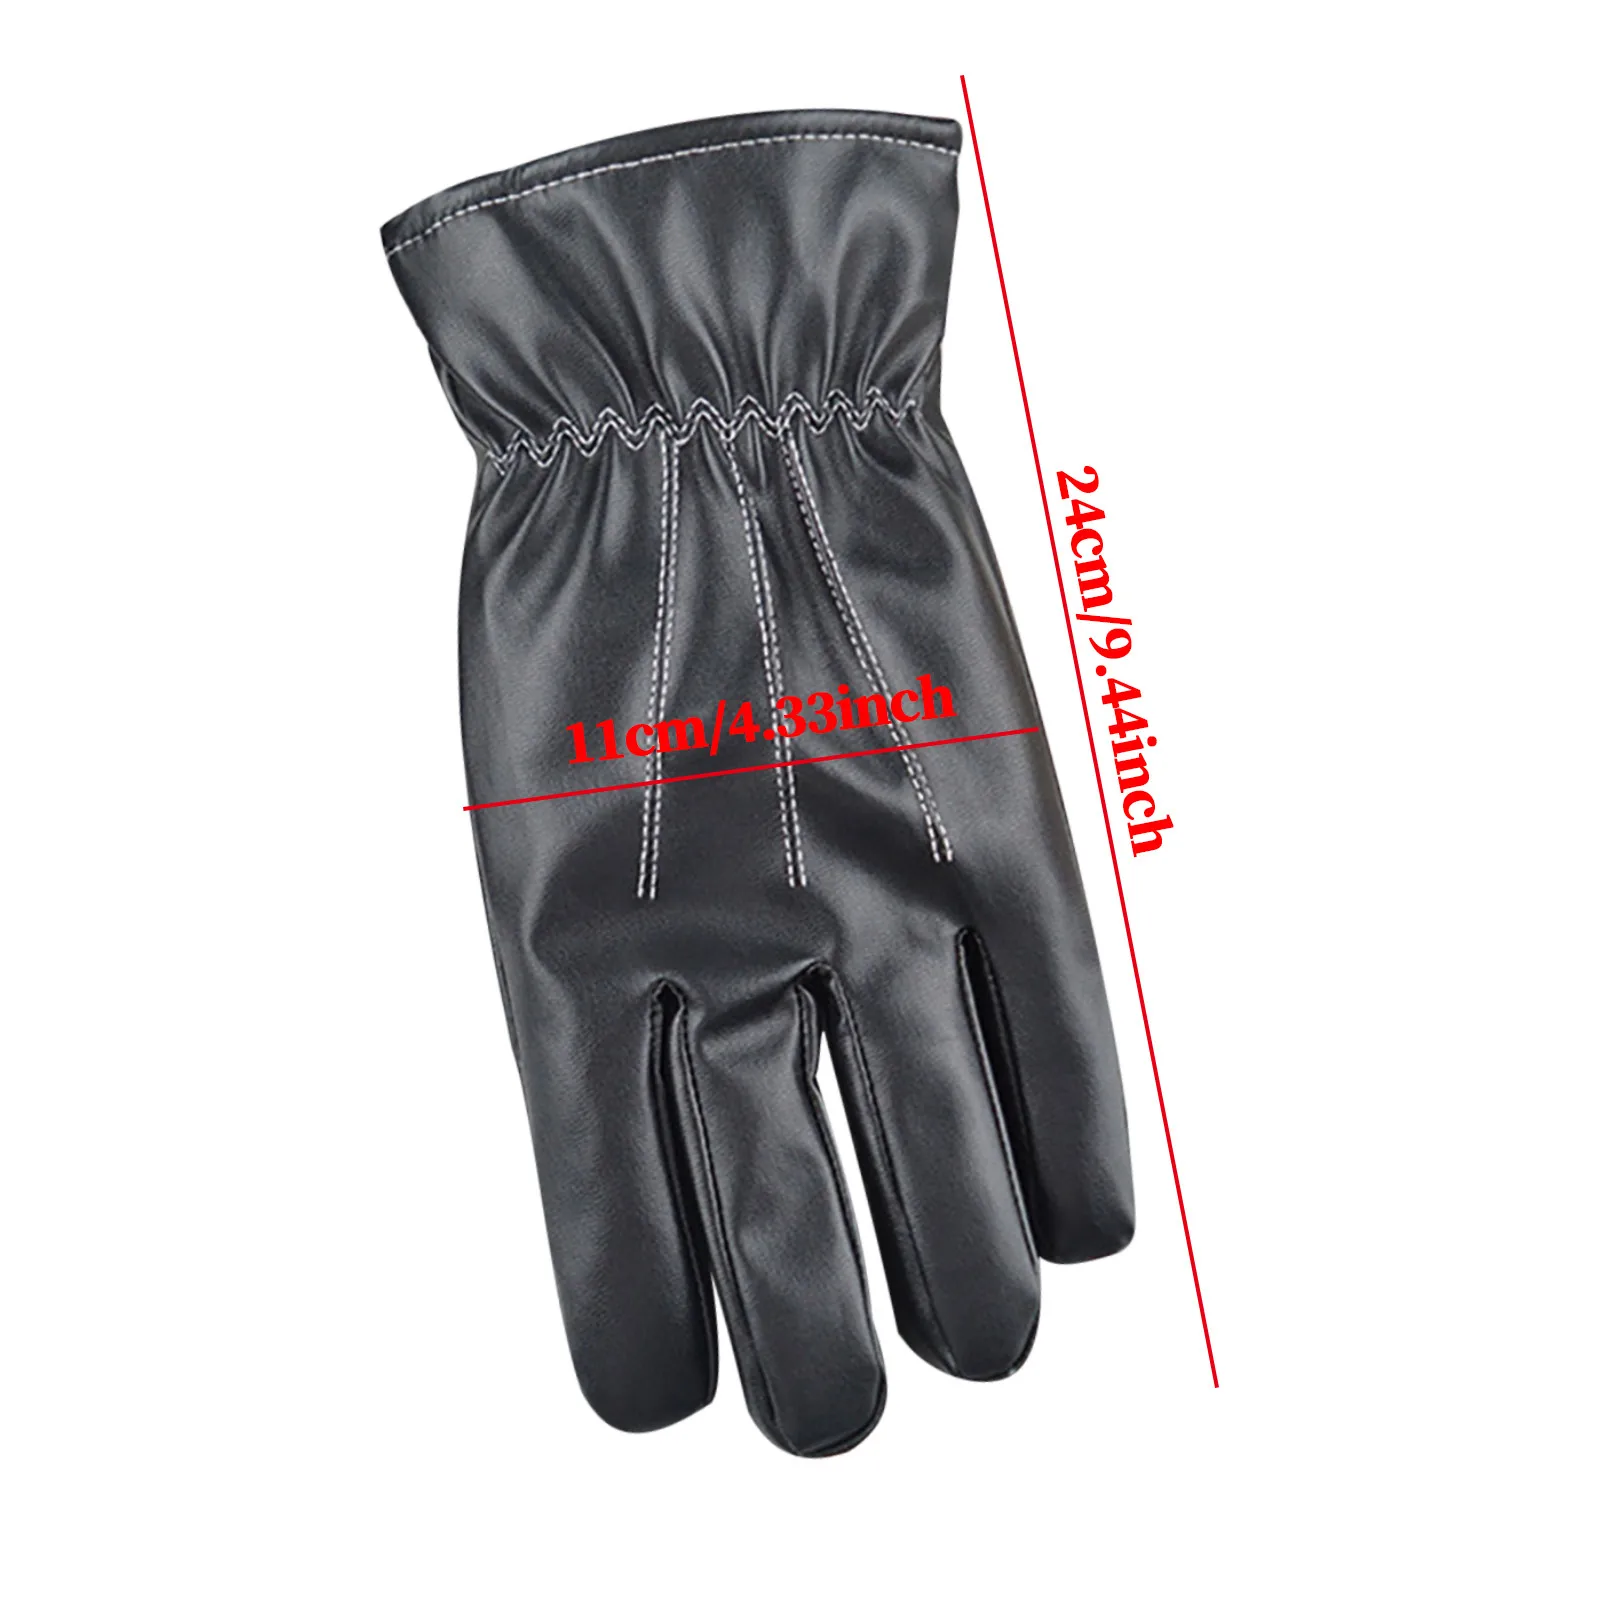 Теплые термальные перчатки Перчатки для езды на велосипеде, бега, вождения, спорта на открытом воздухе, защитные перчатки, варежки